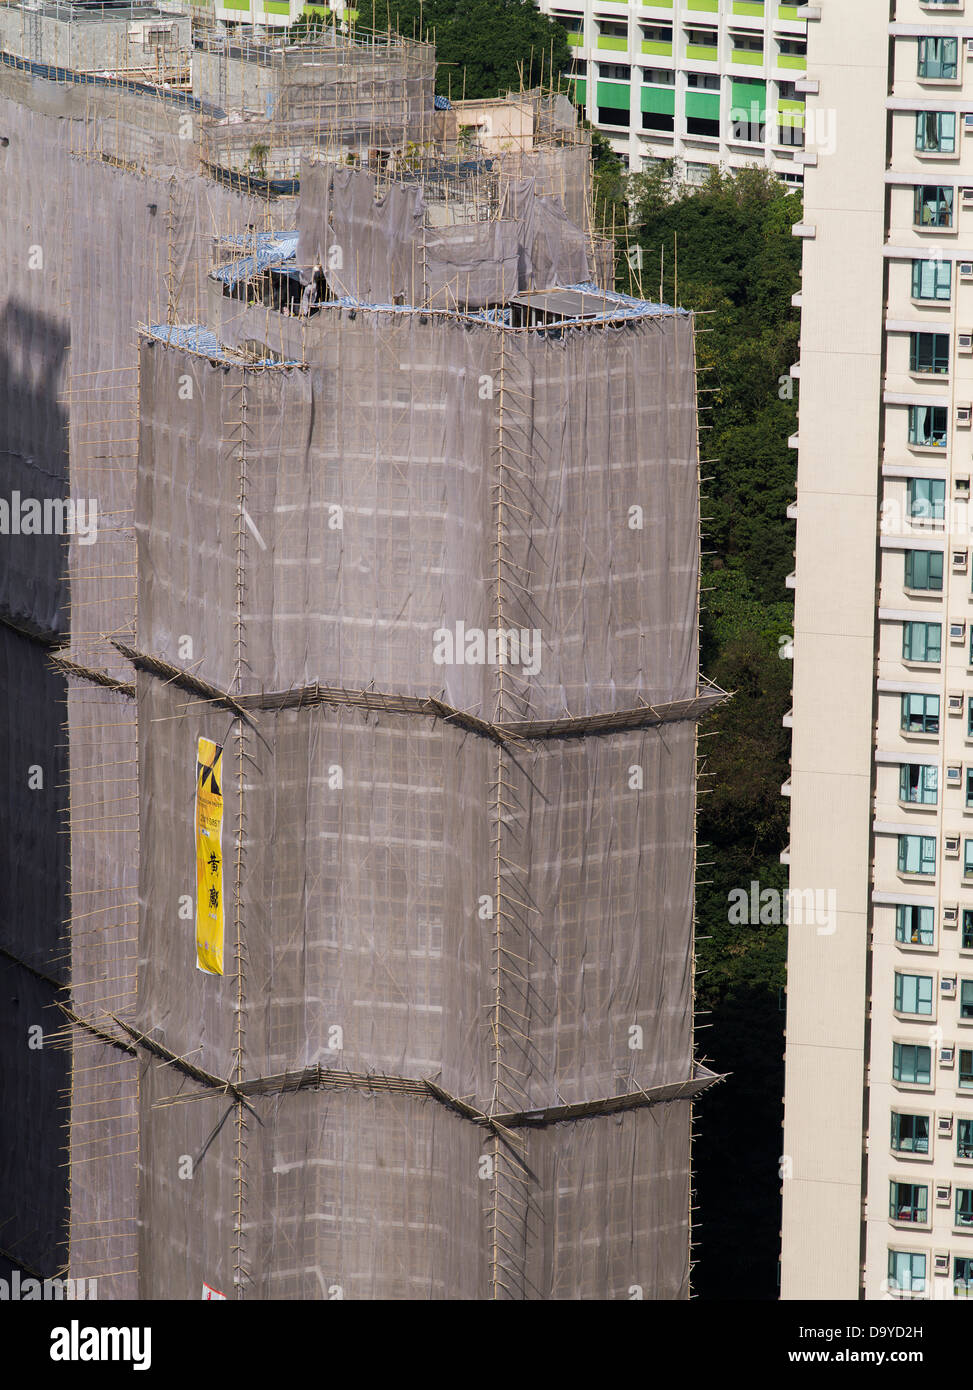 dh Bau von Wolkenkratzern CAUSEWAY BAY HONGKONG Bau von Bambusgerüsten Gebäude China Gerüste Wolkenkratzer Wohnungen werden gebaut Stockfoto